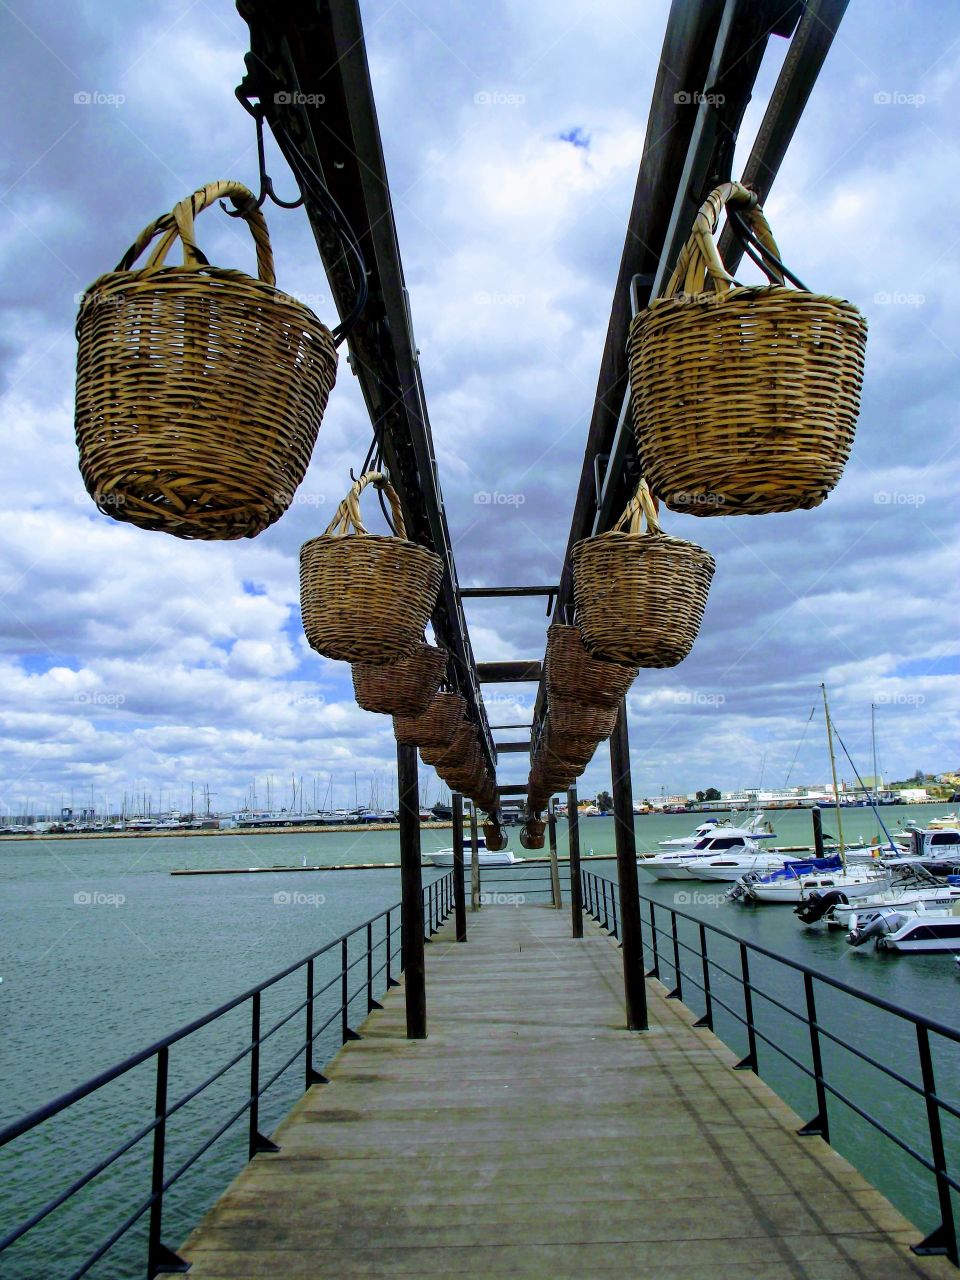 Hanging Baskets Portugal 